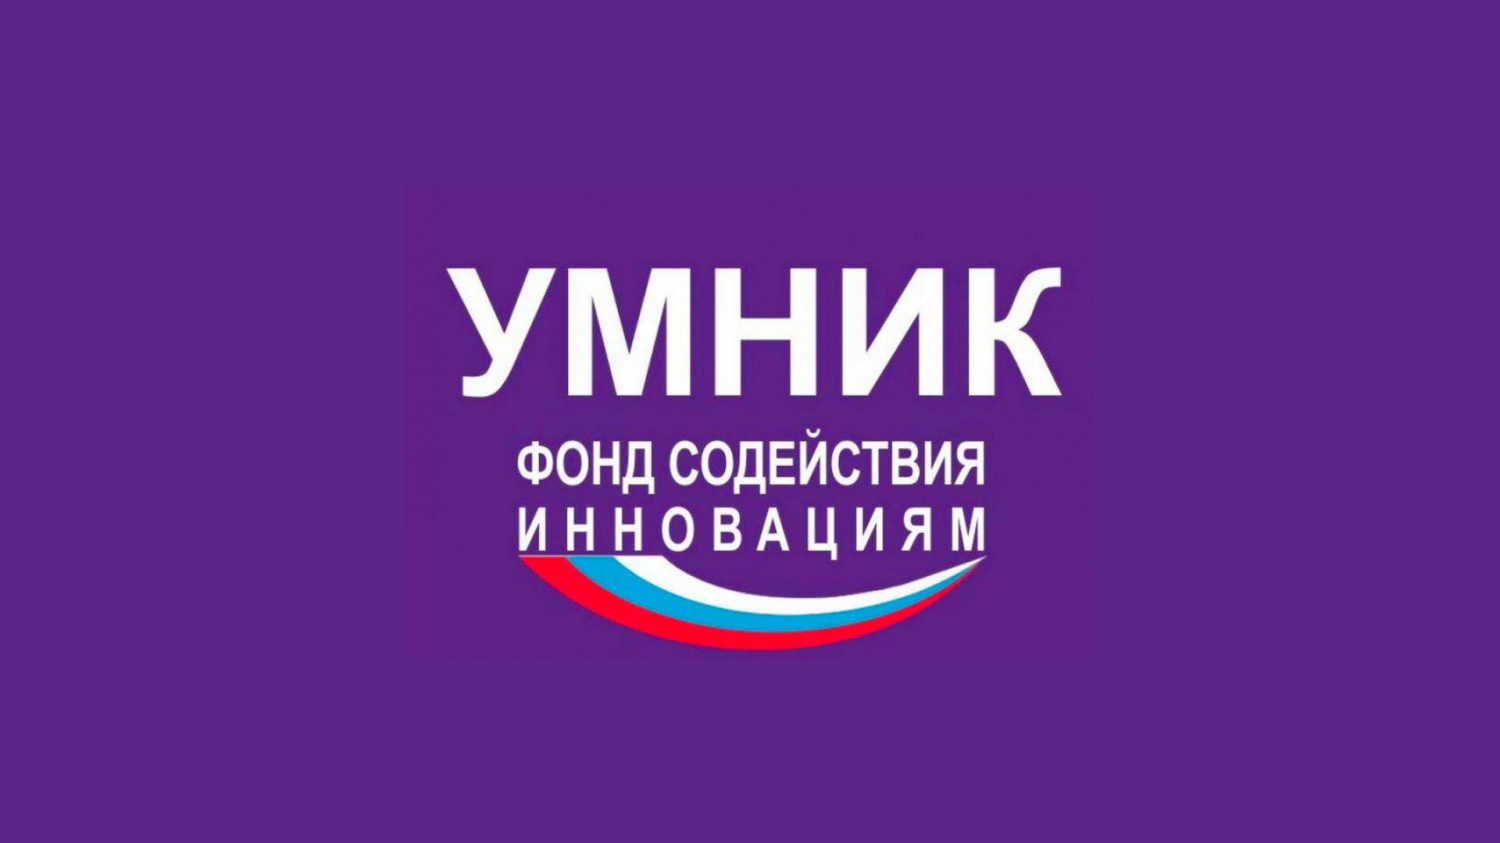 Стартовал онлайн-проект для молодых российских исследователей